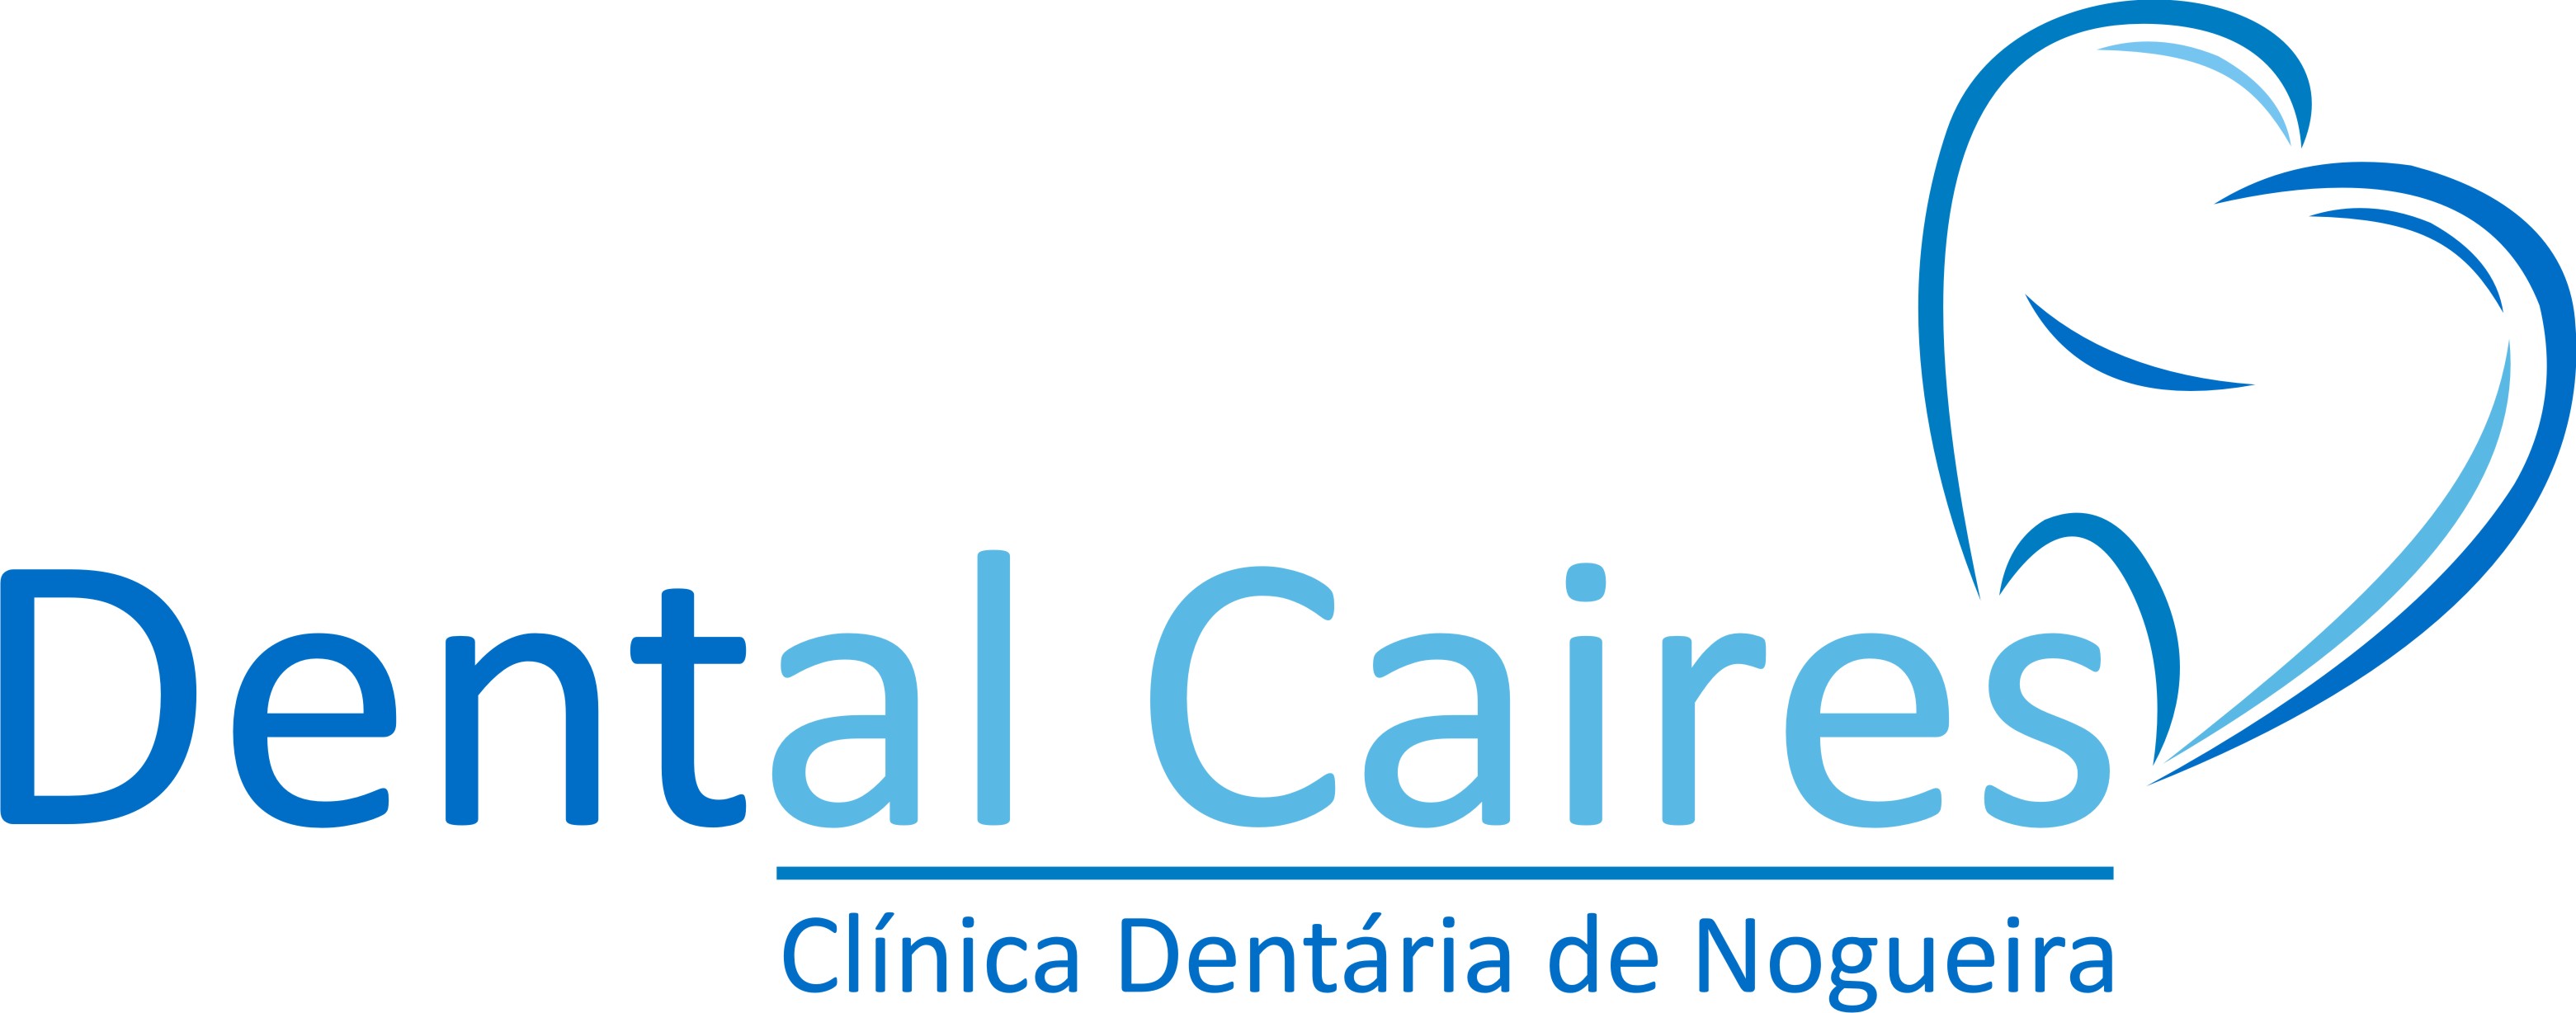 Dental Caires - Clínica Dentária de Nogueira